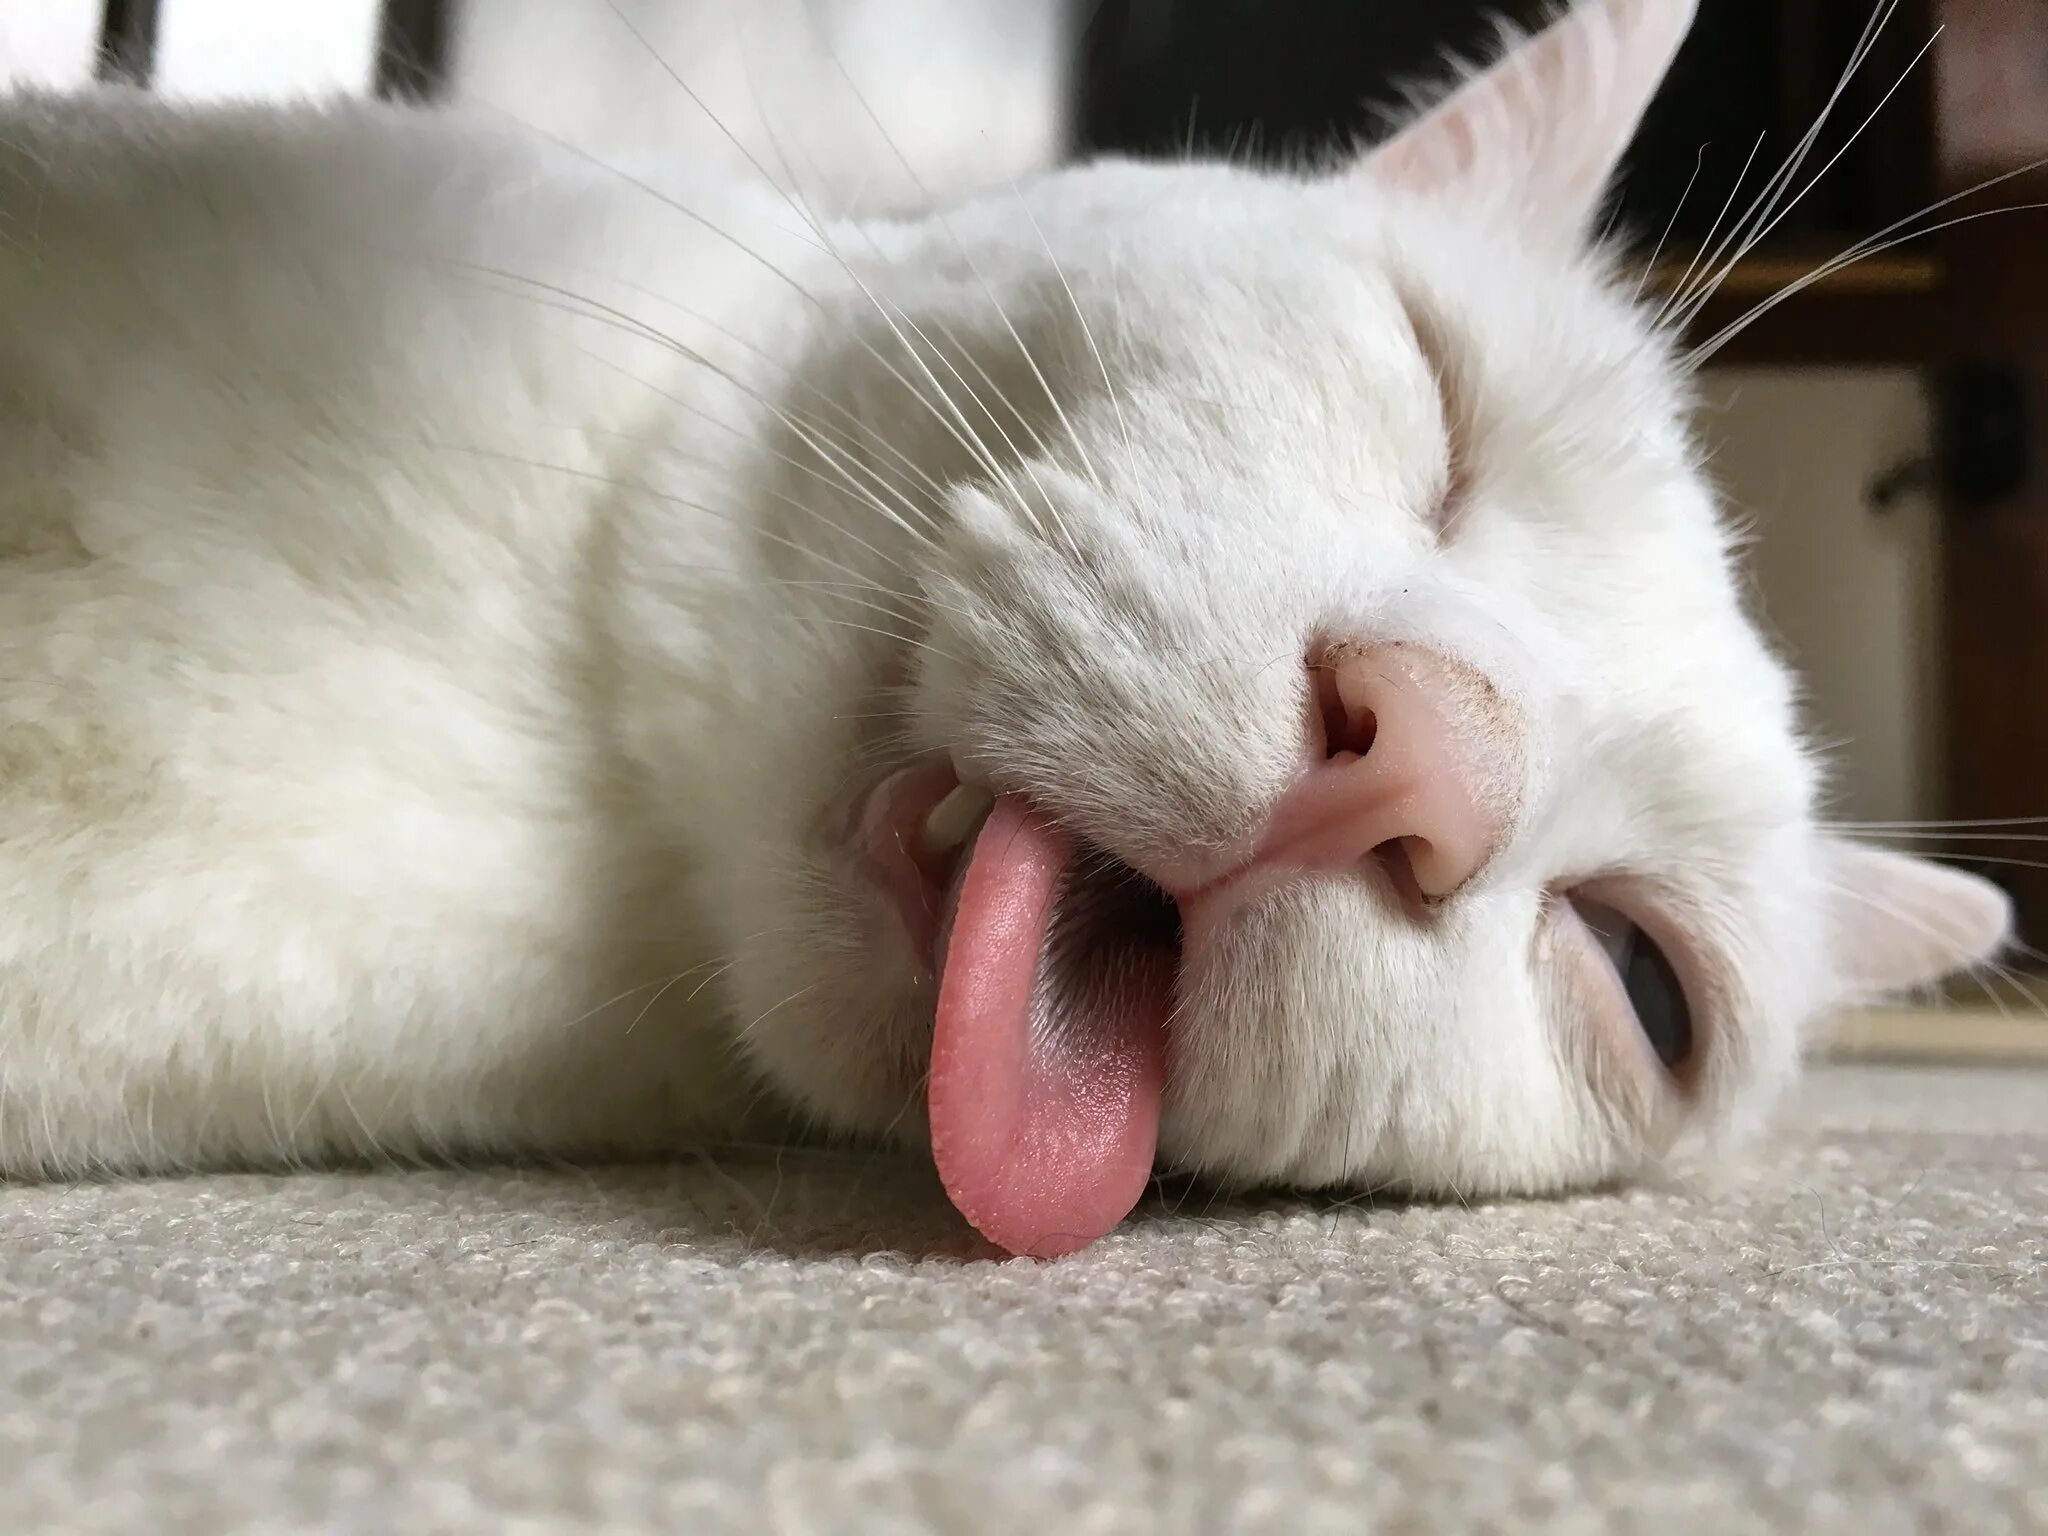 Рот сидеть видео. Кошка с высунутым языком. Спящий кот. Белая кошка с высунутым языком. Спящий кот с высунутым языком.